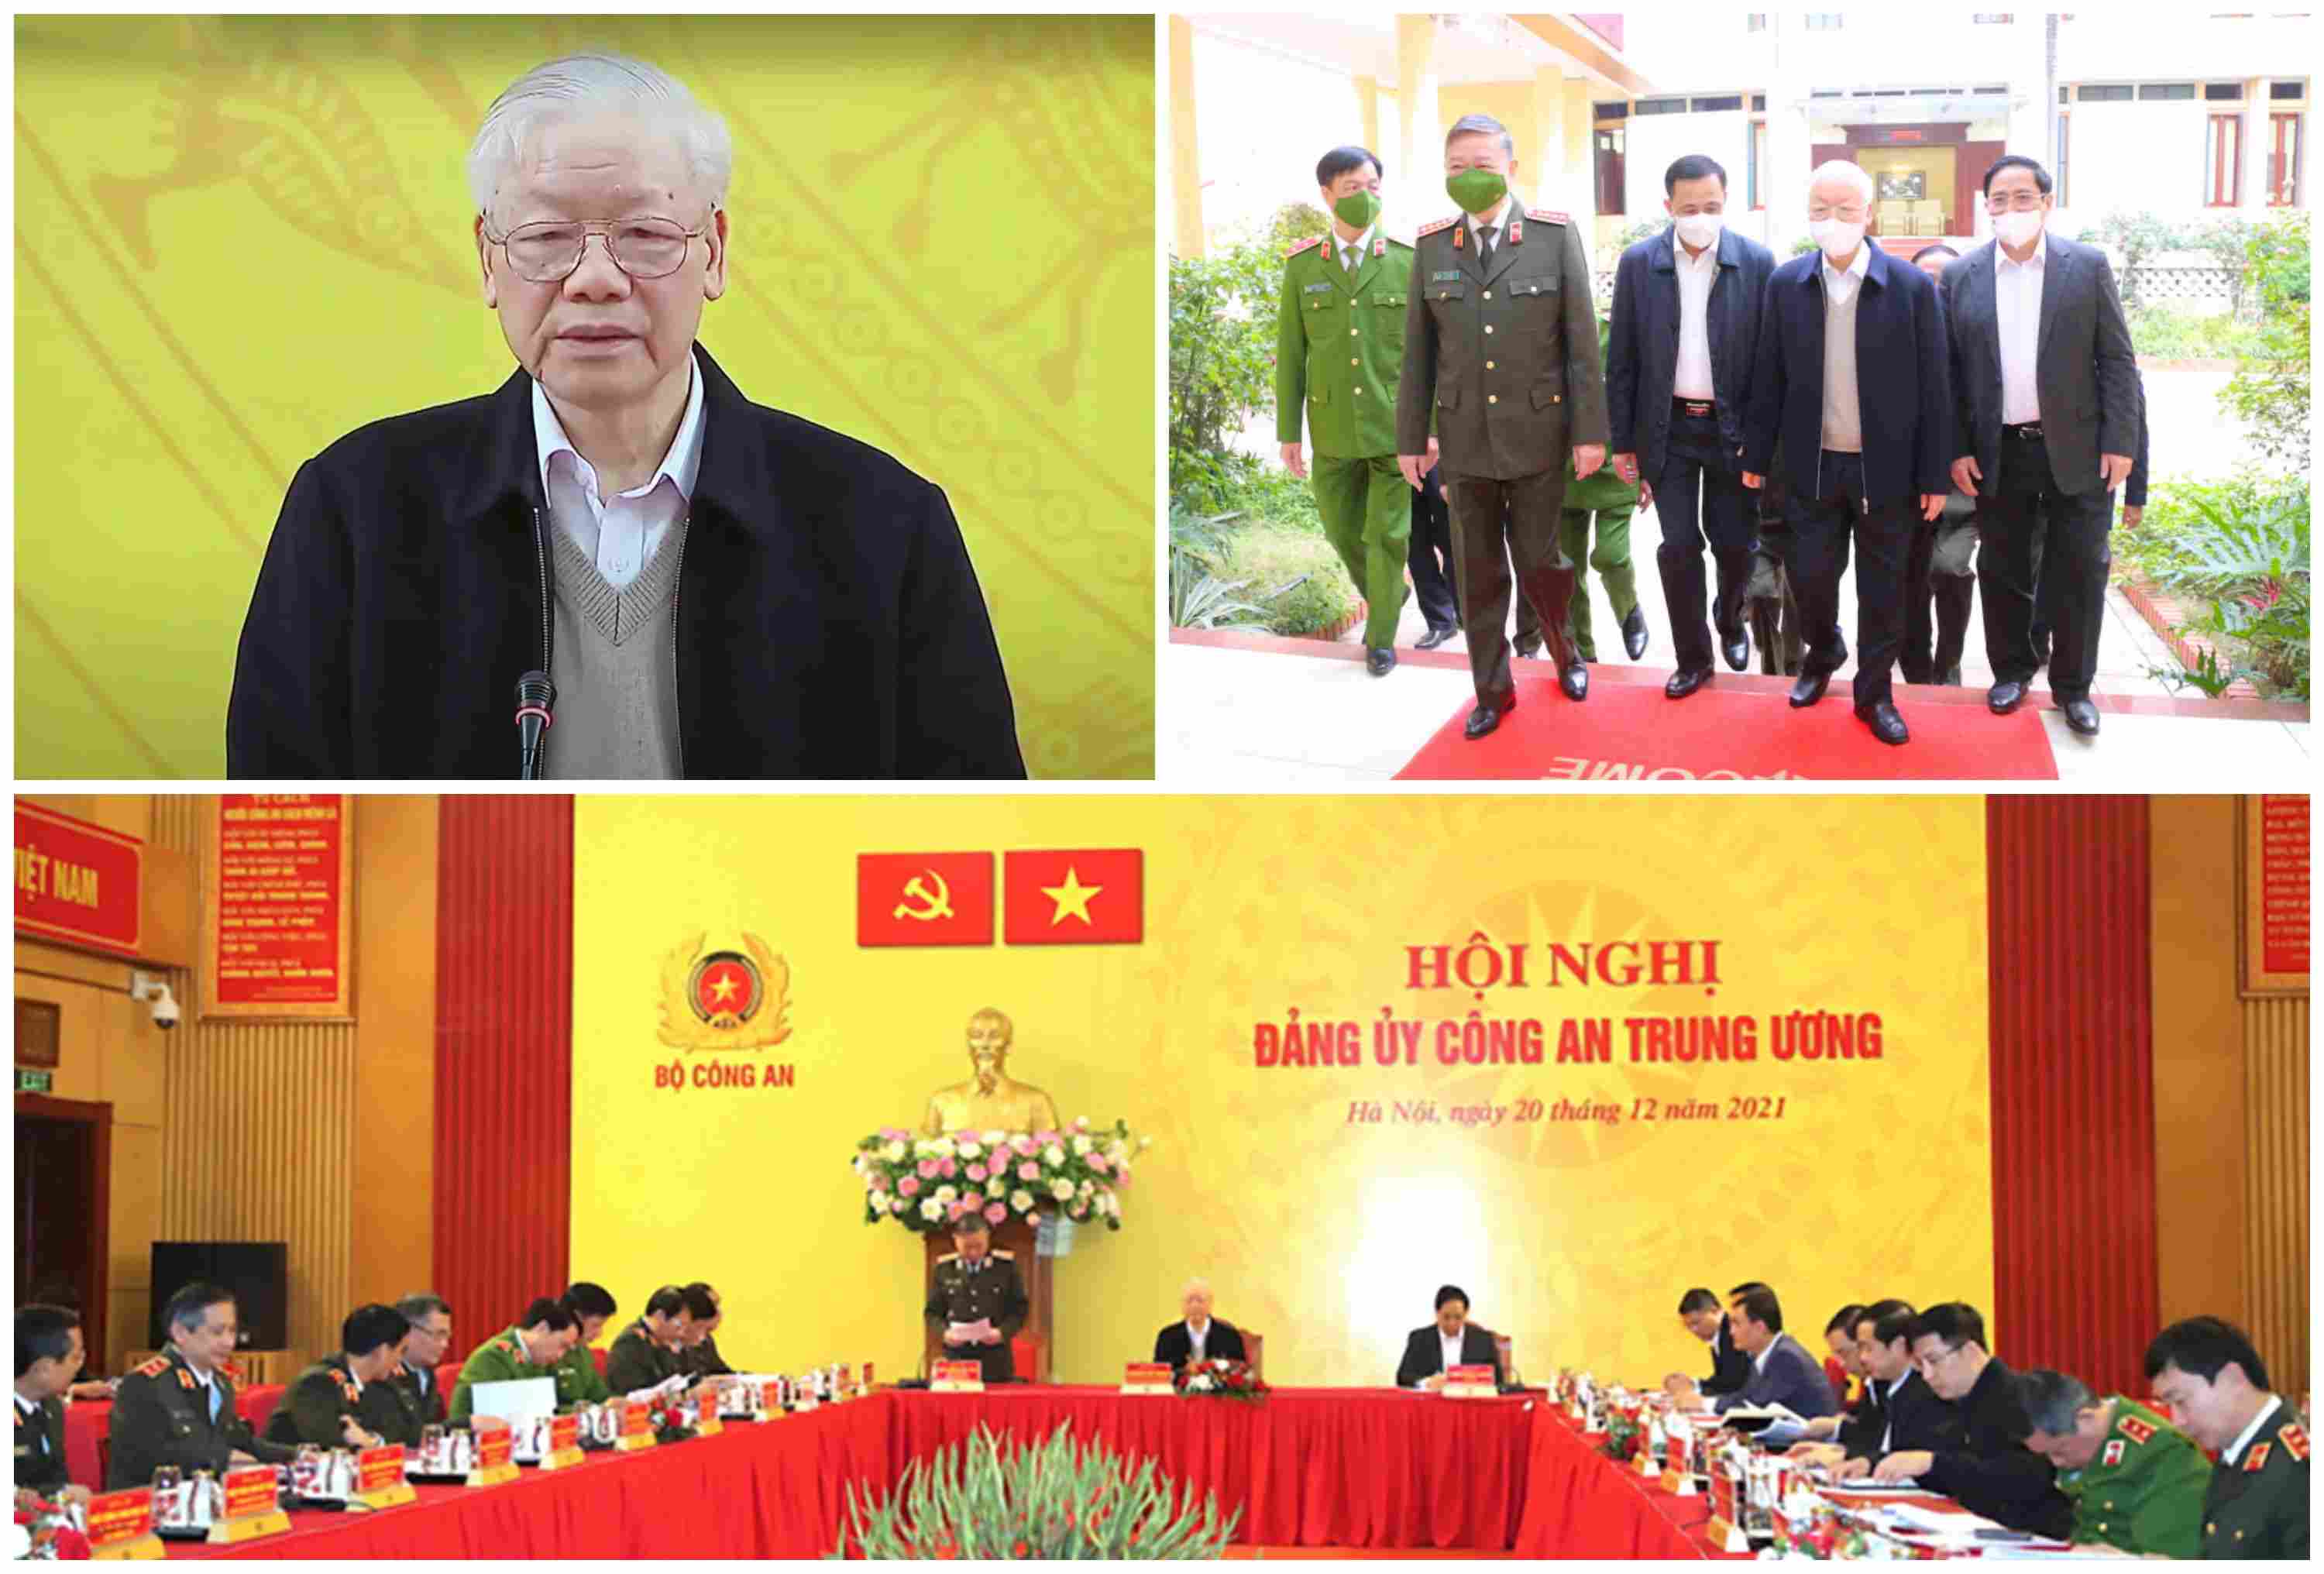 Tổng Bí thư Nguyễn Phú Trọng dự và phát biểu chỉ đạo tại Hội nghị Đảng ủy Công an Trung ương, ngày 20/12/2021